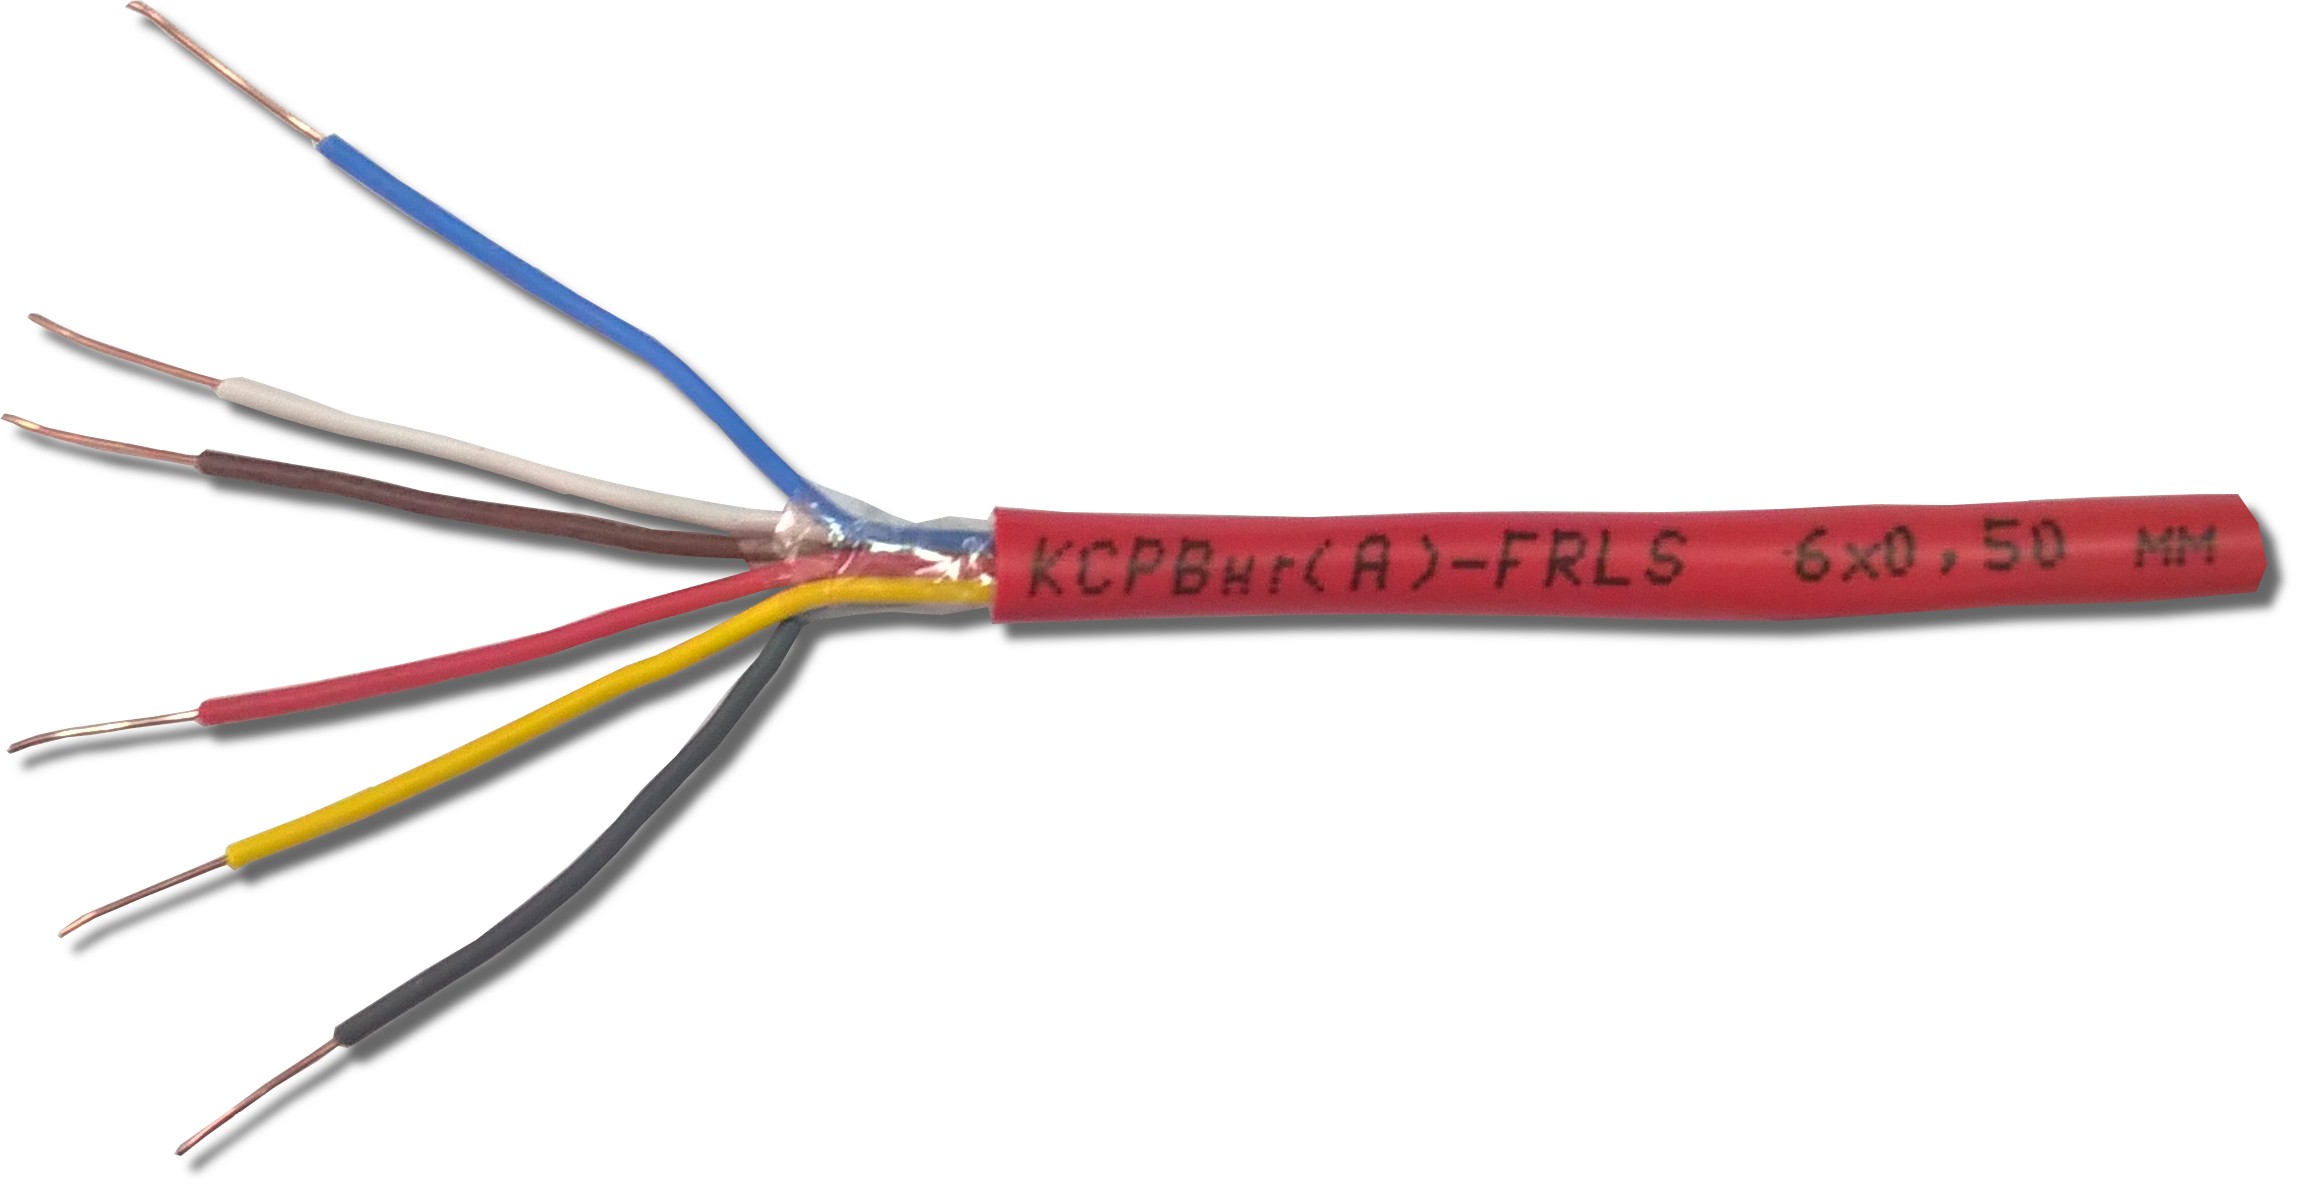 Огнестойкий кабель пожарной сигнализации. КСРВНГ(А)-FRLS 4х0,5 (0,2 кв мм), кабель для сис. Кабель КСРВНГ(А)-FRLS 2х0,50 мм (0,2 мм²). КСРВНГ(А)-FRLSLTX 2х2х0,97 мм. Кабель (провод) КСРВНГ(А)-FRLS 2х0,5мм.